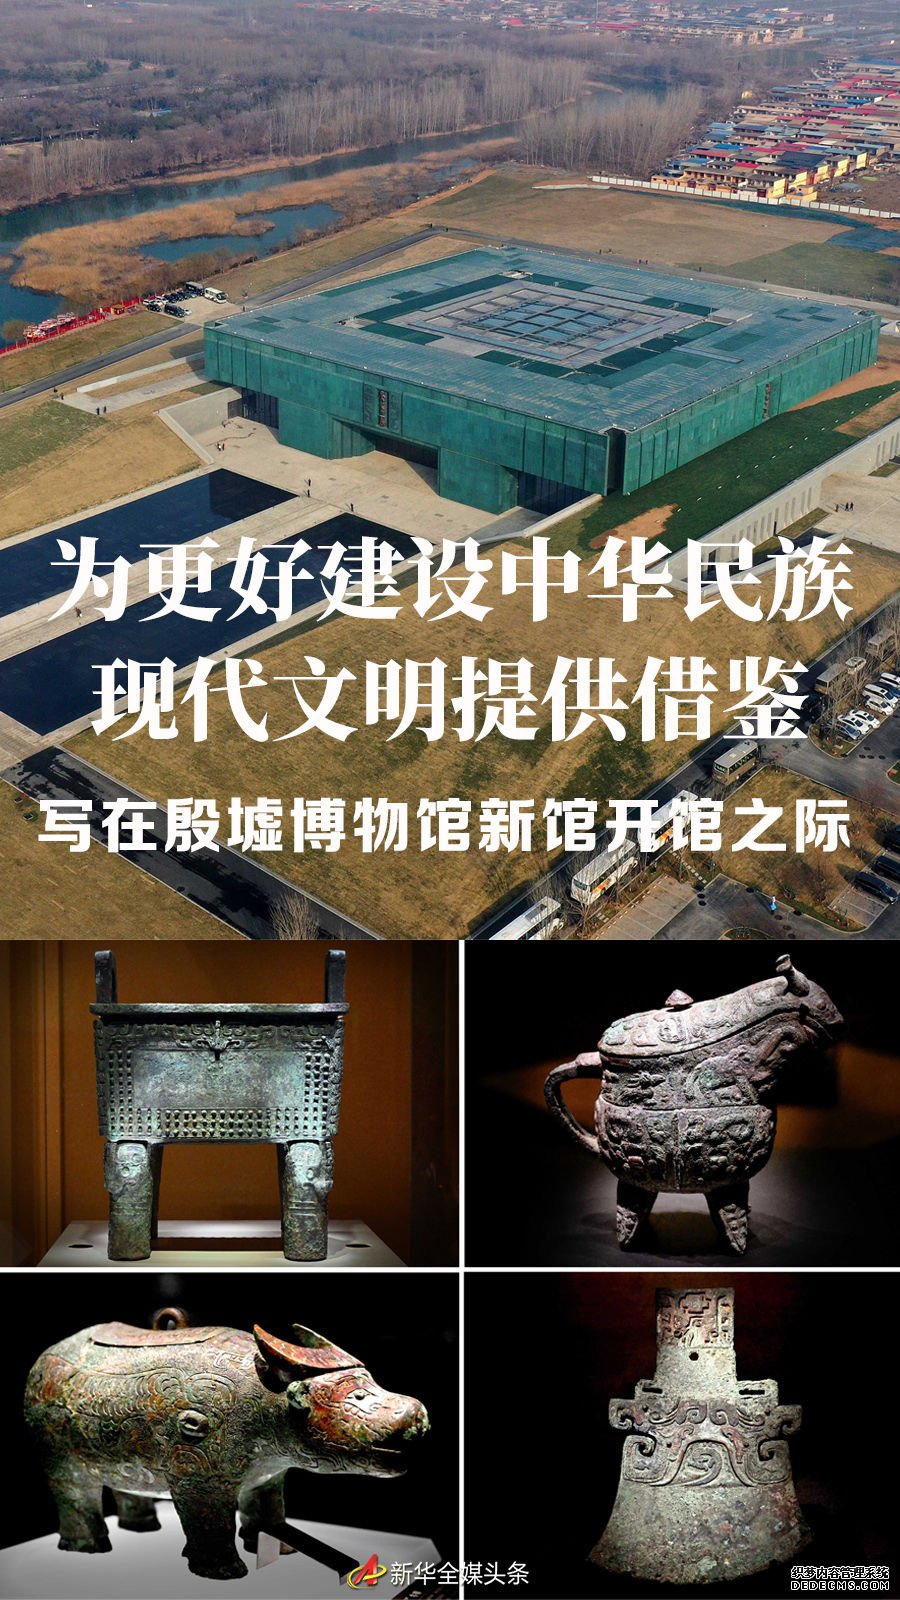 为更好建设中华民族现代文明提供借鉴——写在殷墟博物馆新馆开馆之际